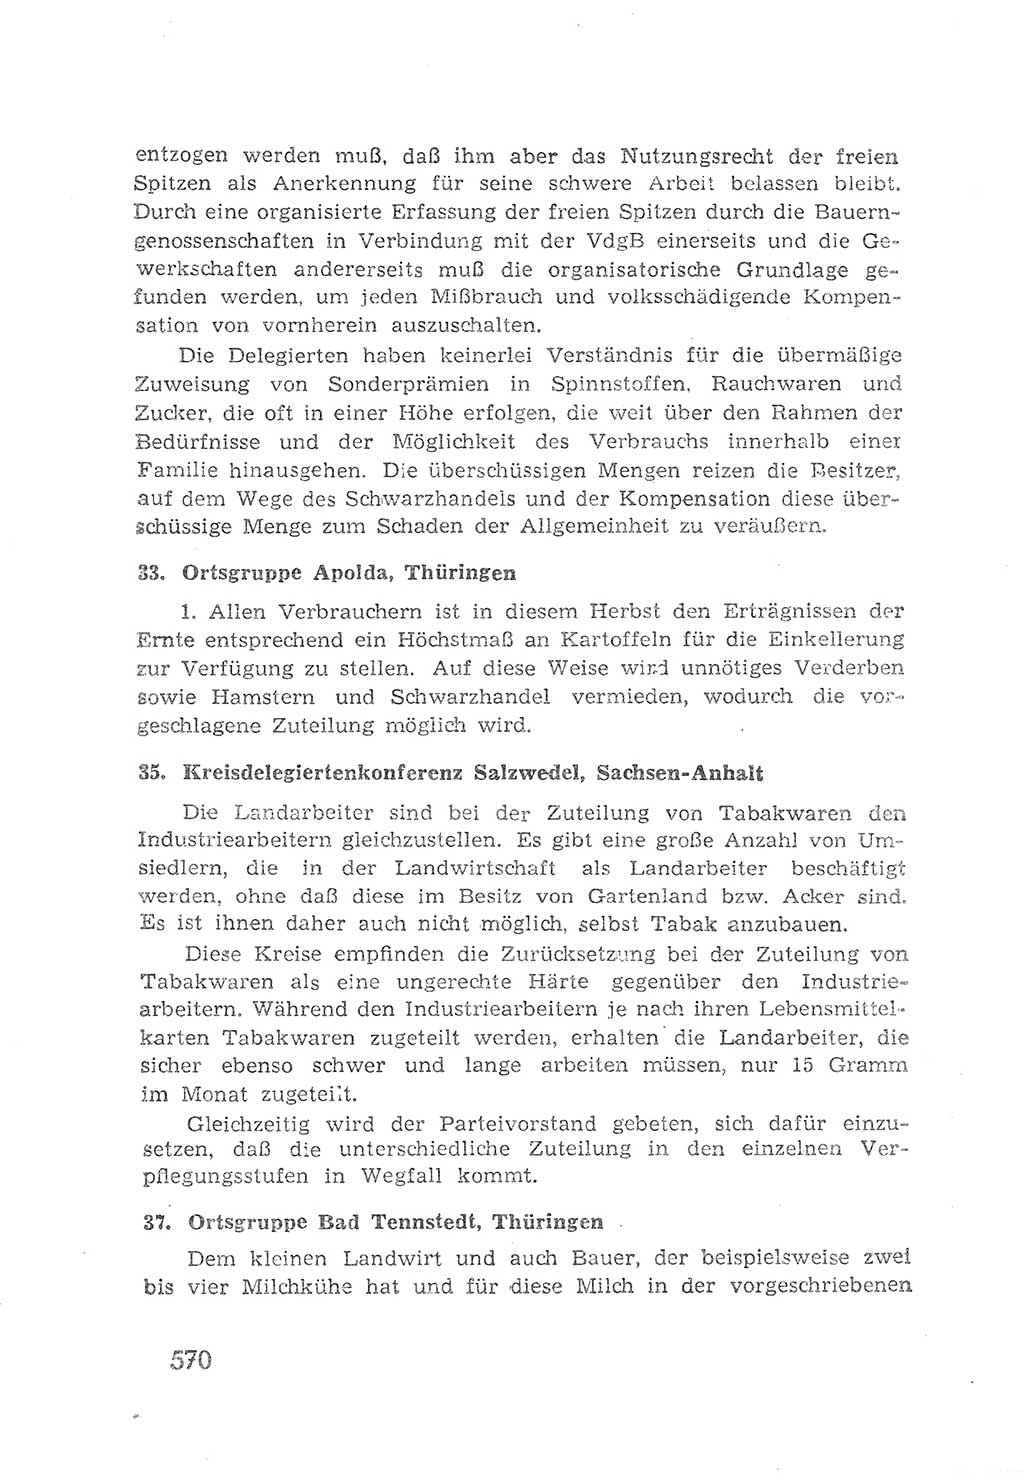 Protokoll der Verhandlungen des 2. Parteitages der Sozialistischen Einheitspartei Deutschlands (SED) [Sowjetische Besatzungszone (SBZ) Deutschlands] 1947, Seite 570 (Prot. Verh. 2. PT SED SBZ Dtl. 1947, S. 570)